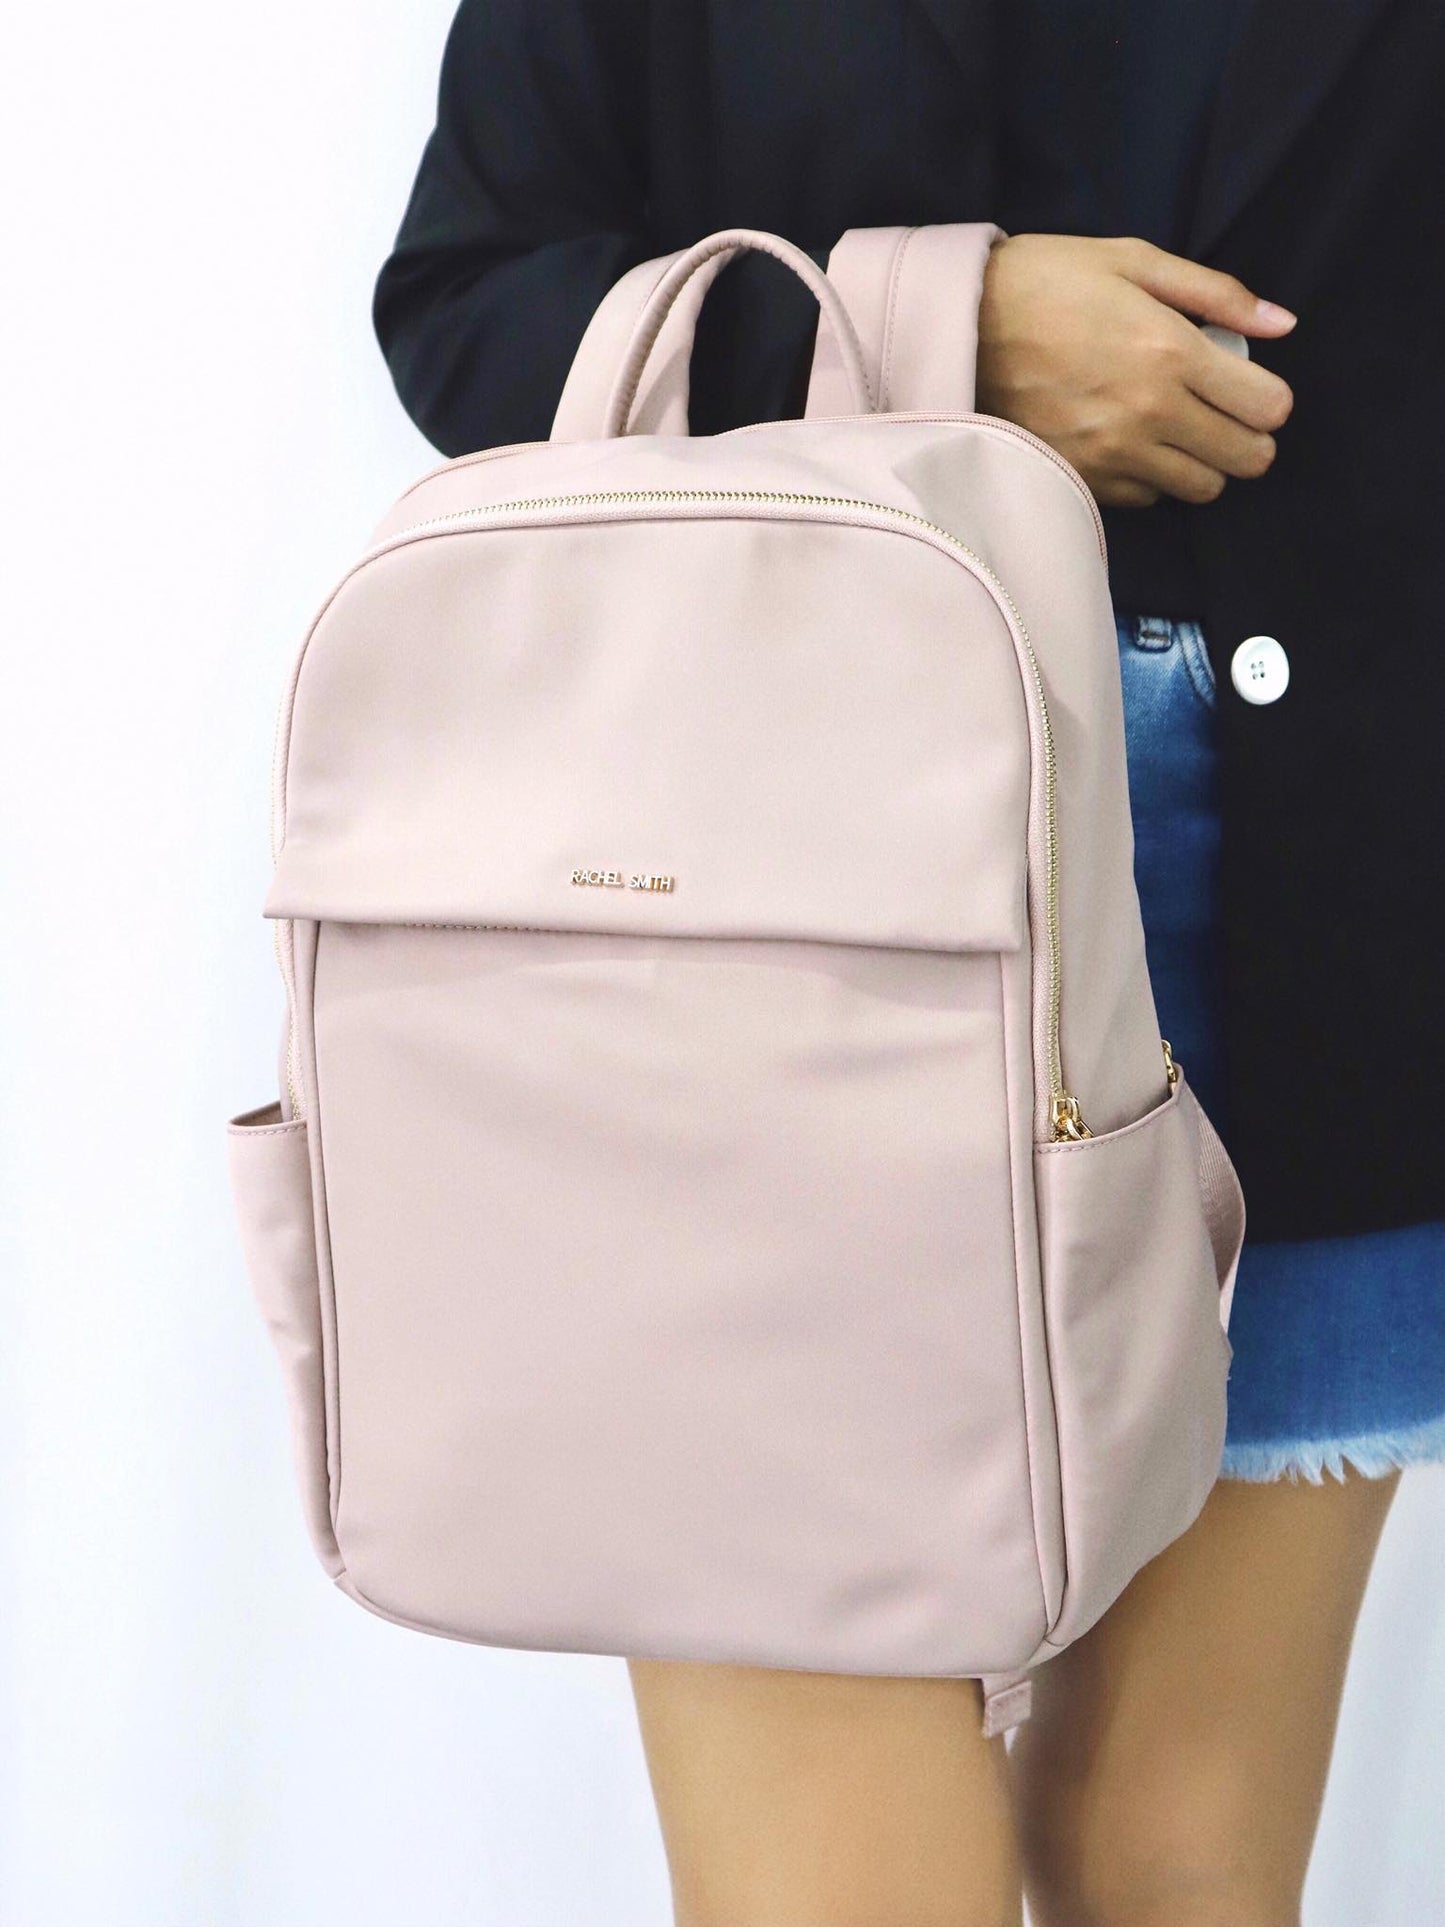 Zoe Large Nylon Backpack